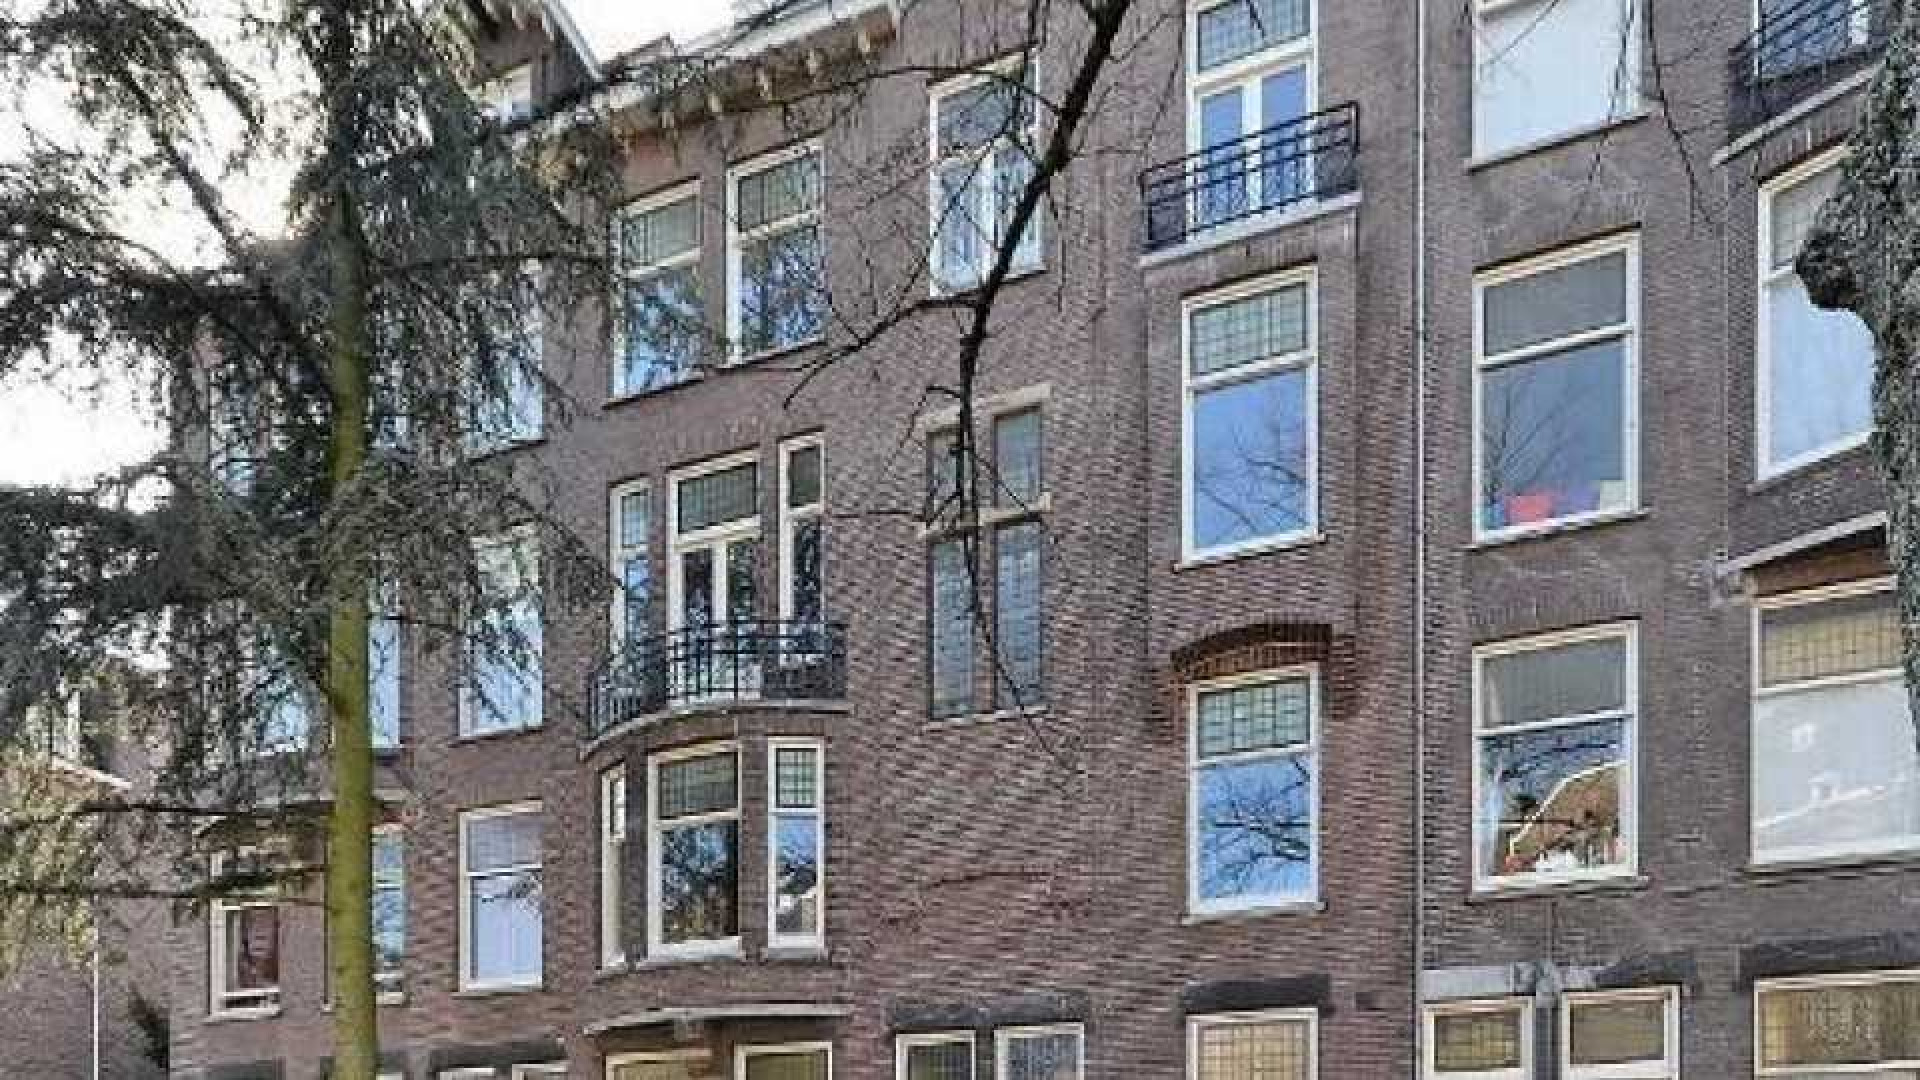 Frank Rijkaard zoekt huurder voor zijn benedenwoning. Zie foto's